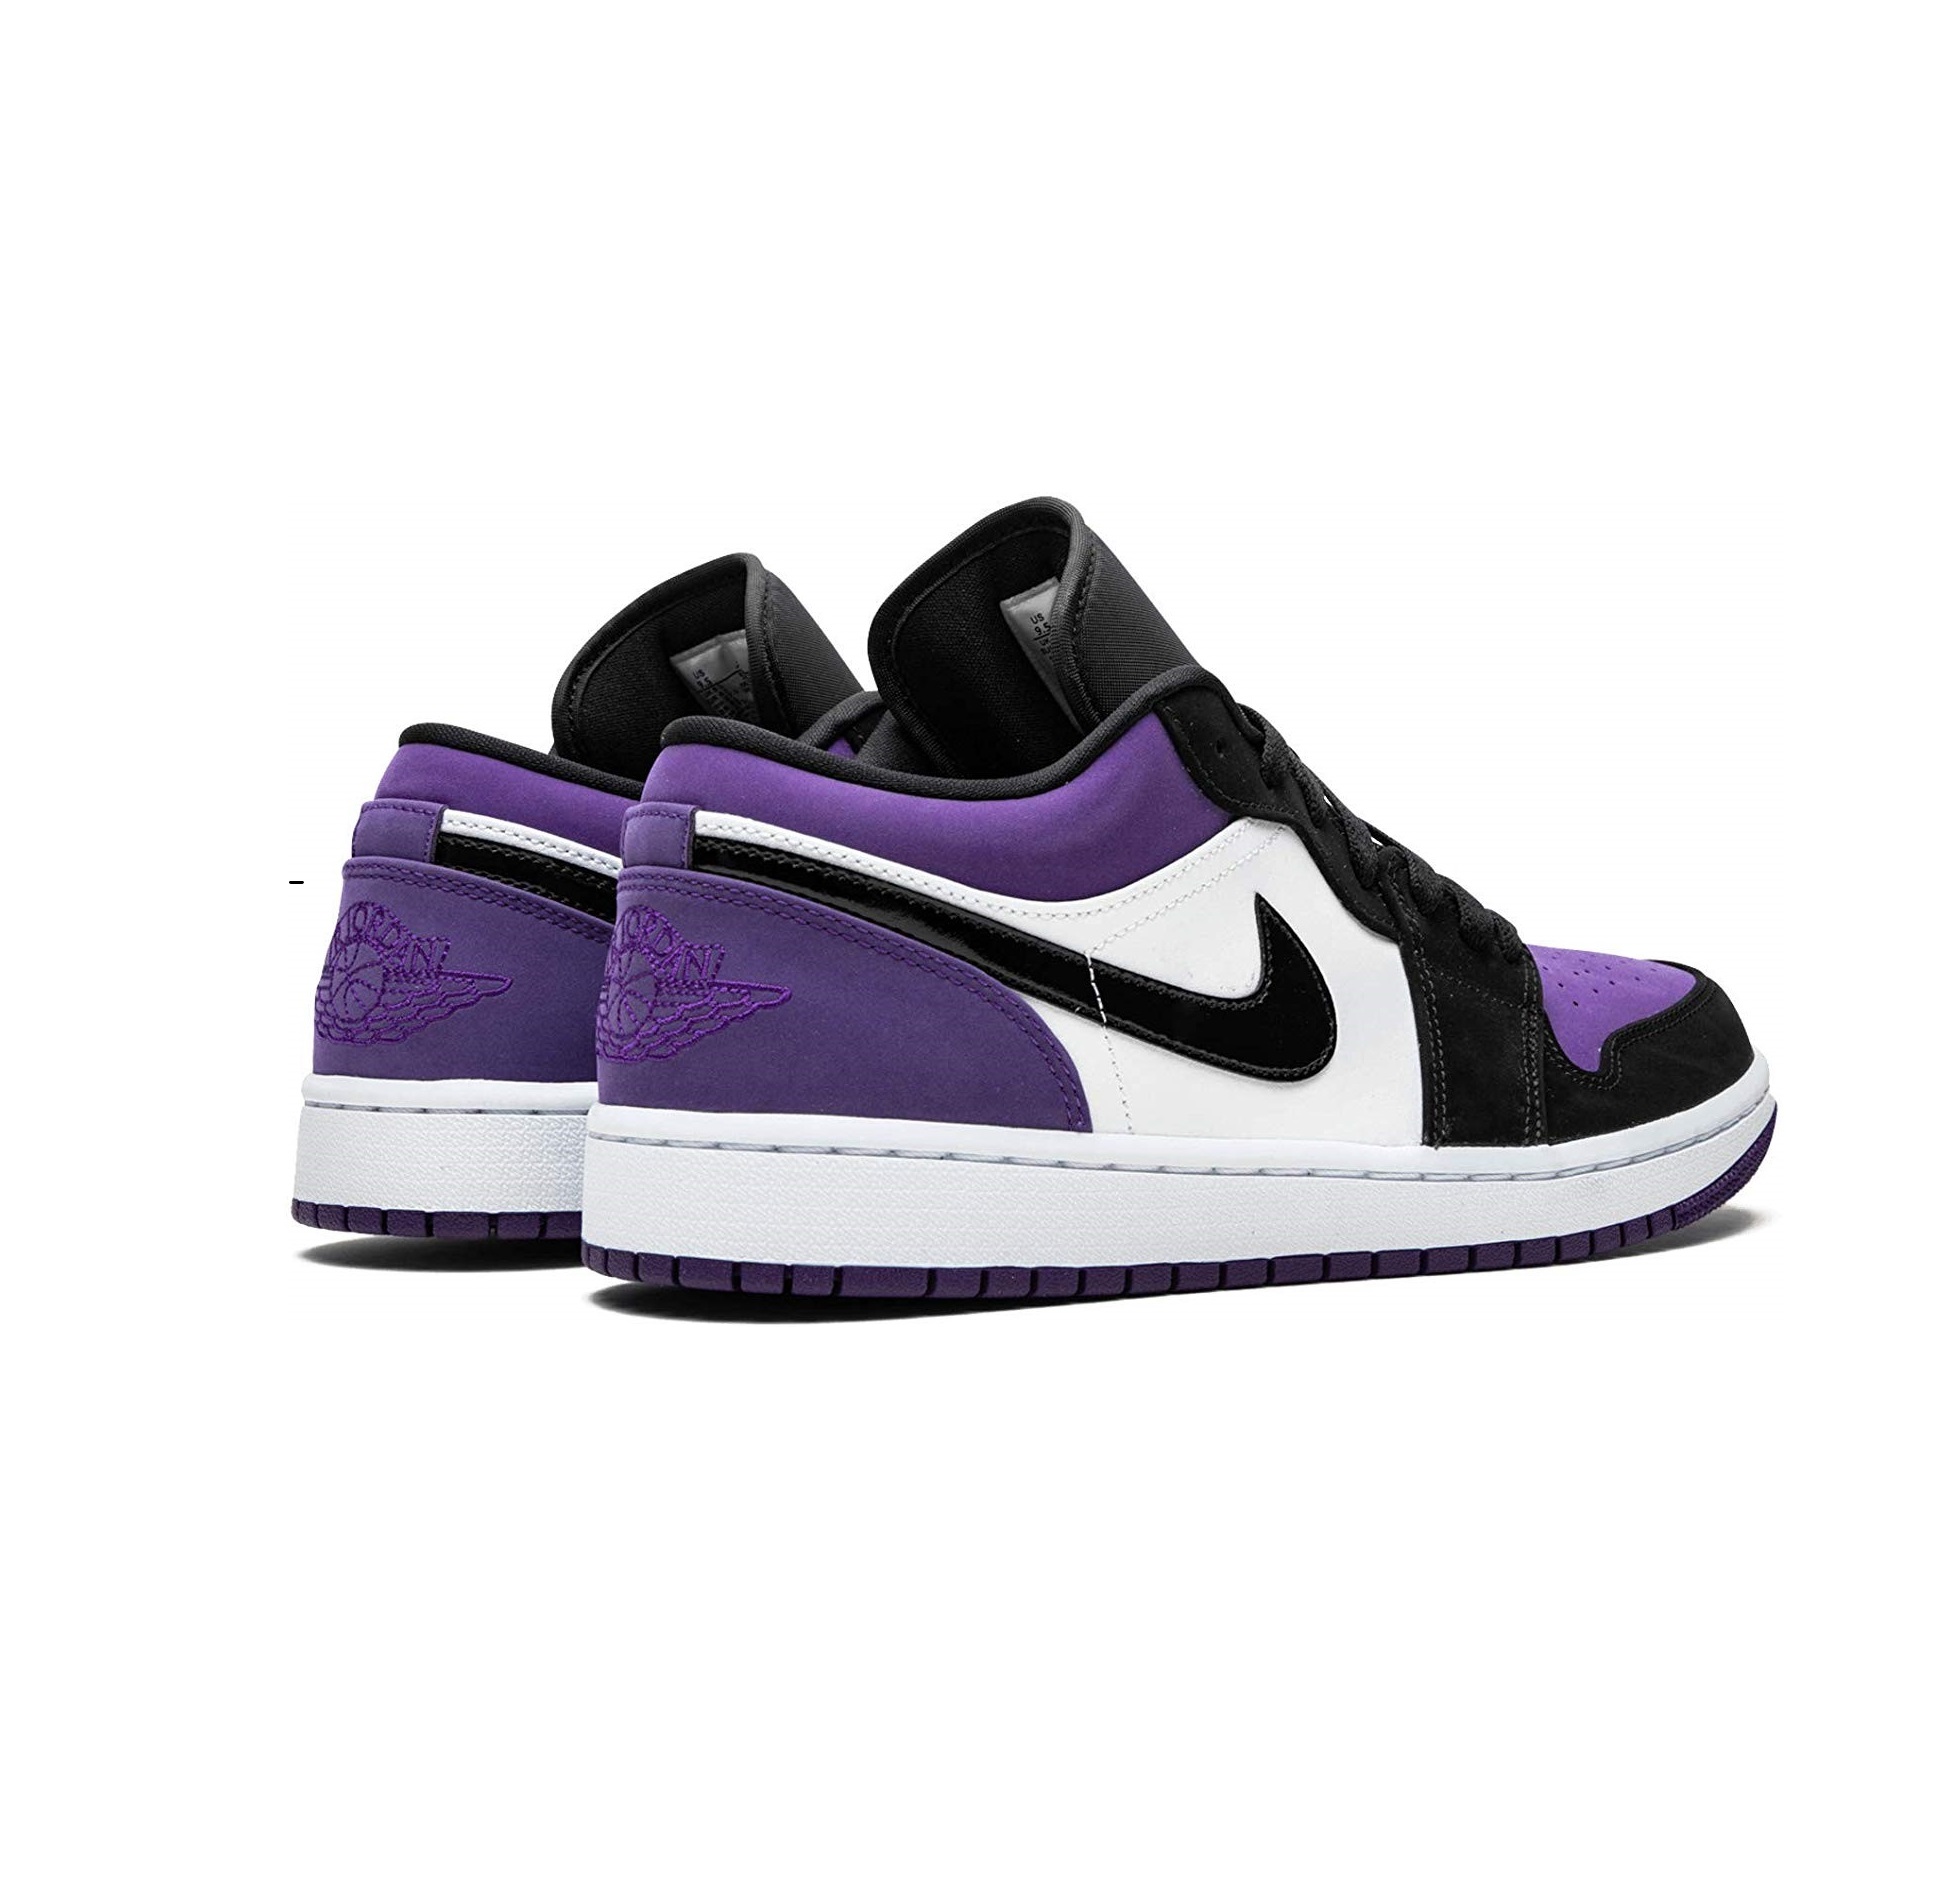 Найк 1 лоу. Nike Air Jordan 1 Low Court Purple White. Nike Air Jordan 1 Low Court Purple. Nike Air Jordan 1 Low Purple. Nike Jordan 1 Low Purple White.